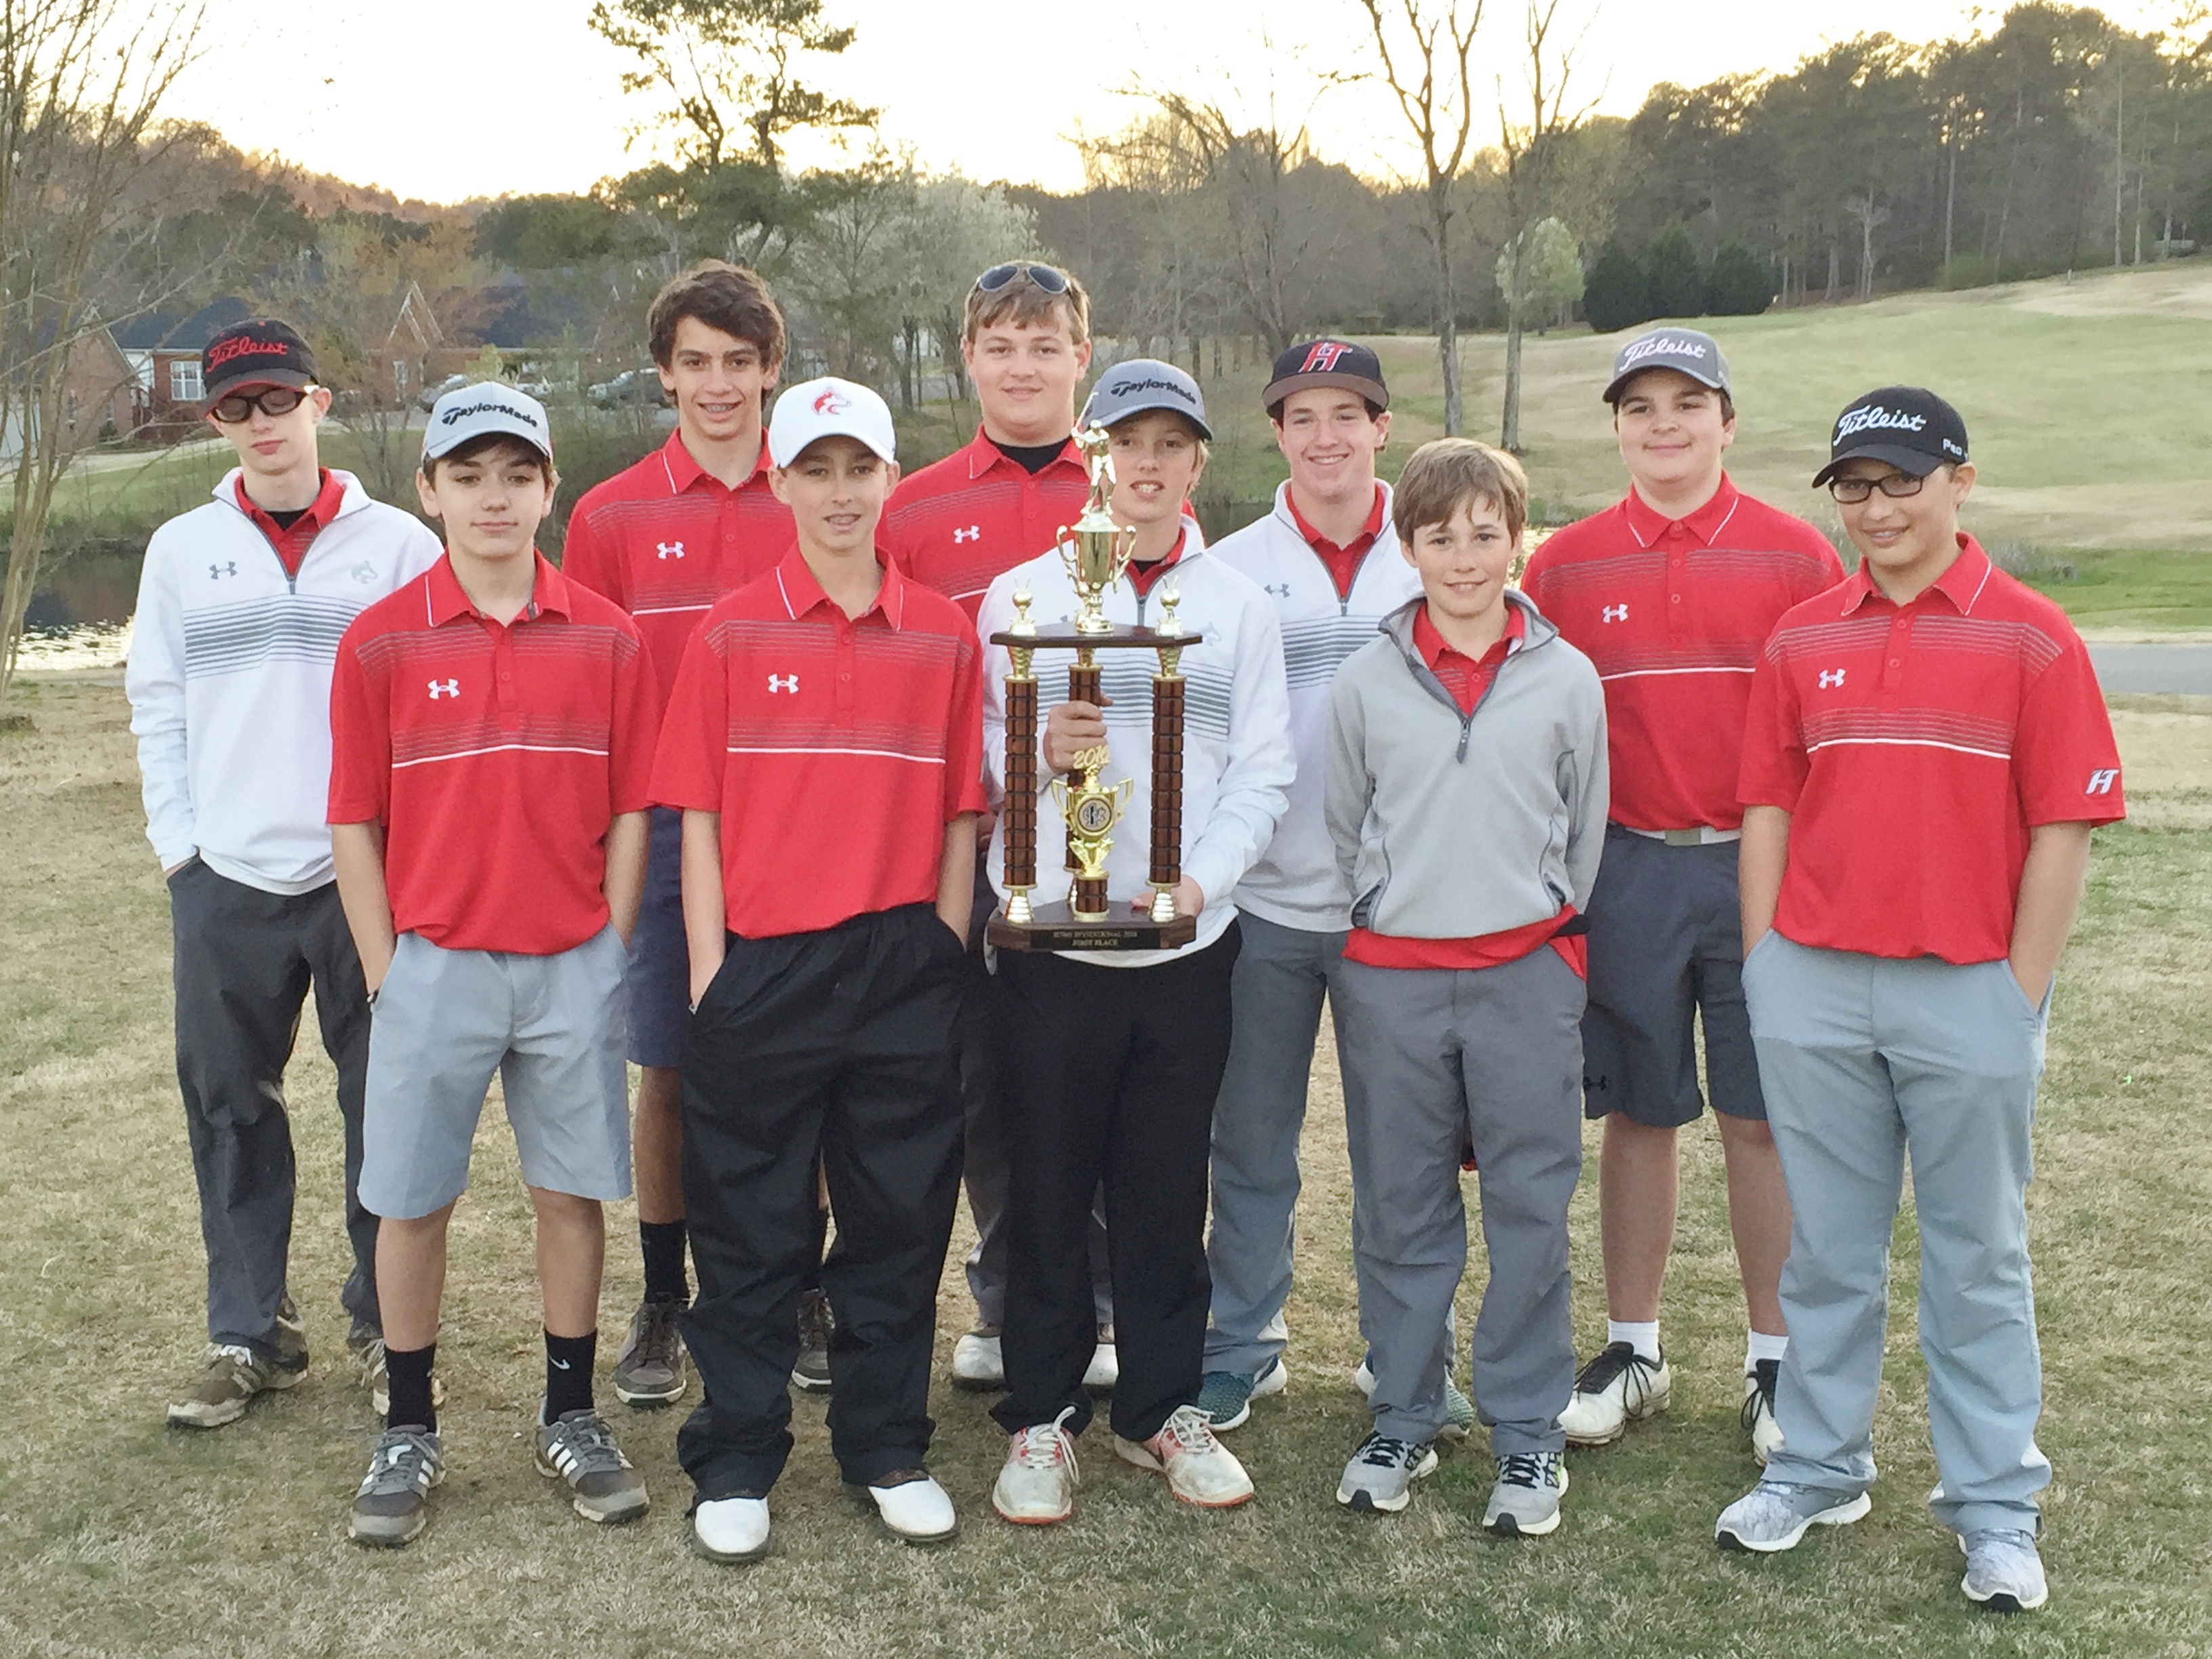 Cole Davidson wins middle school golf tournament